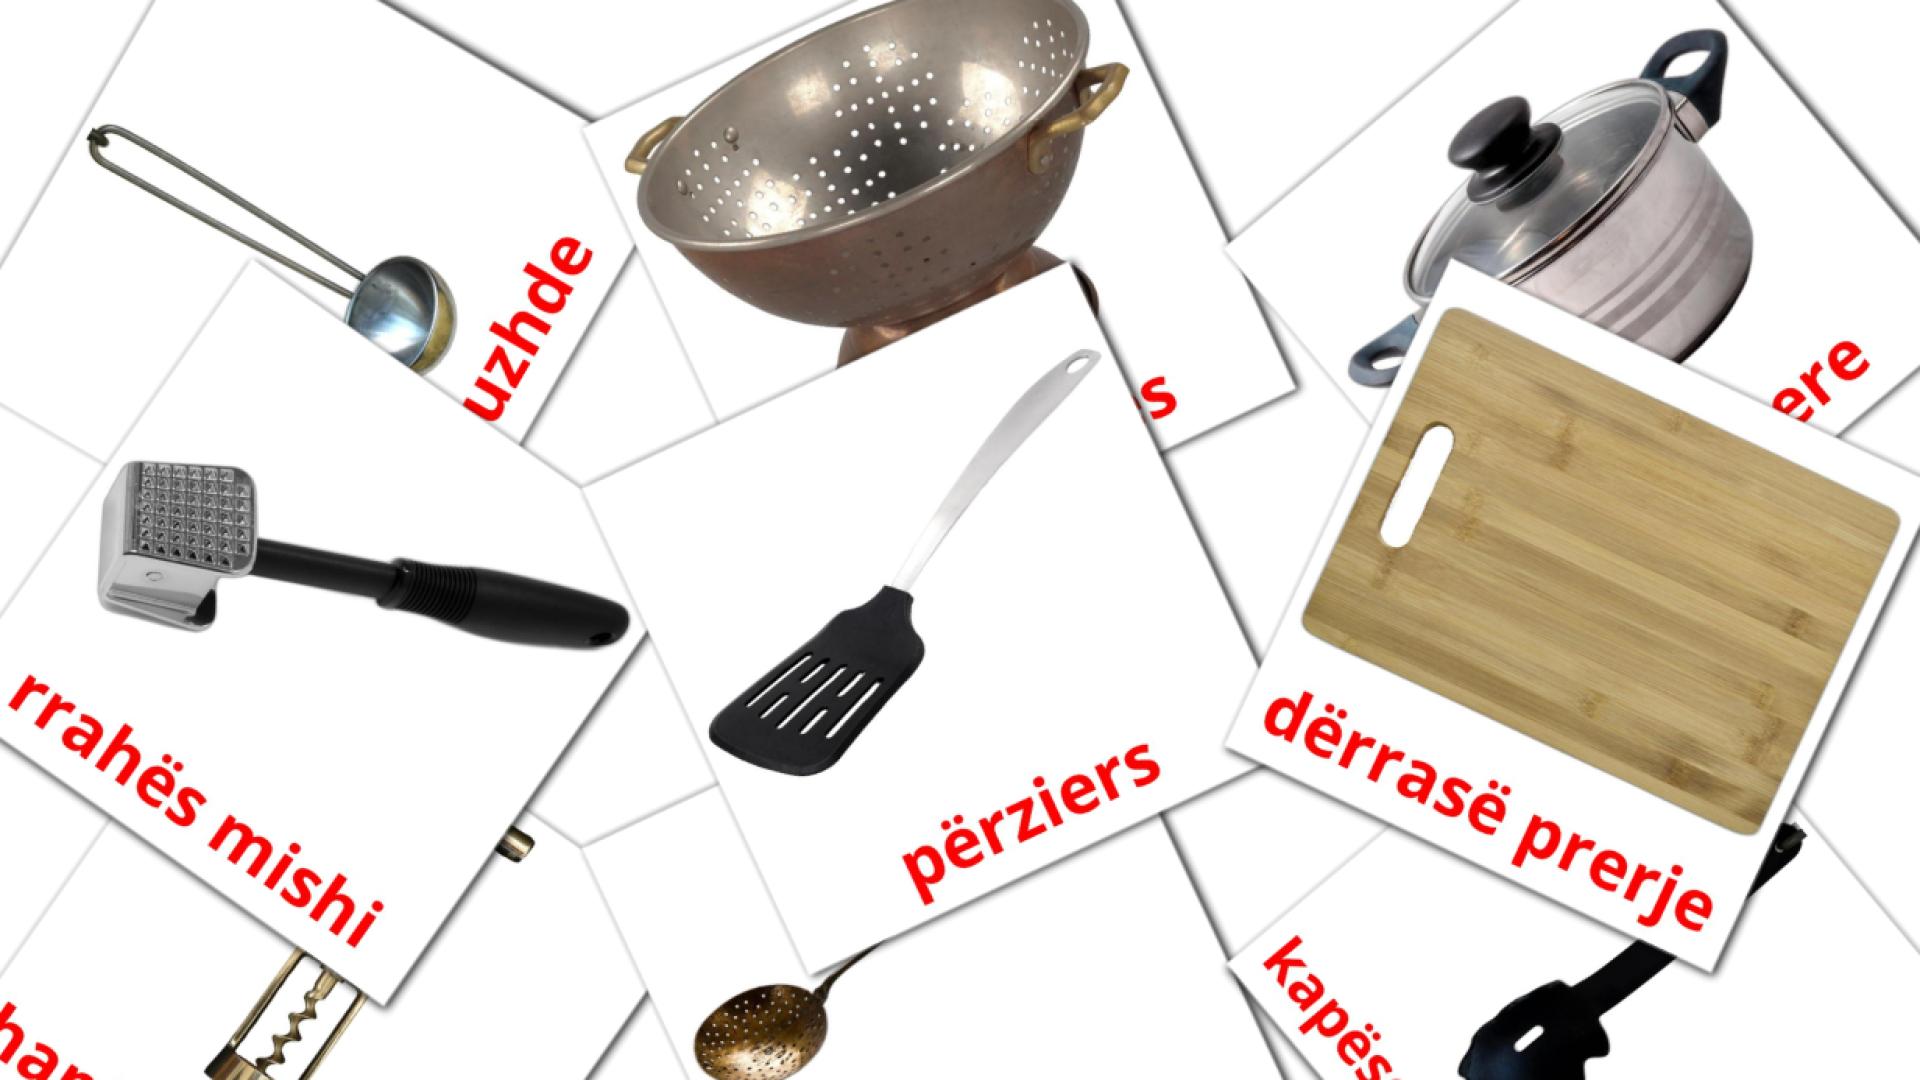 Посуда - албанский словарь картинок